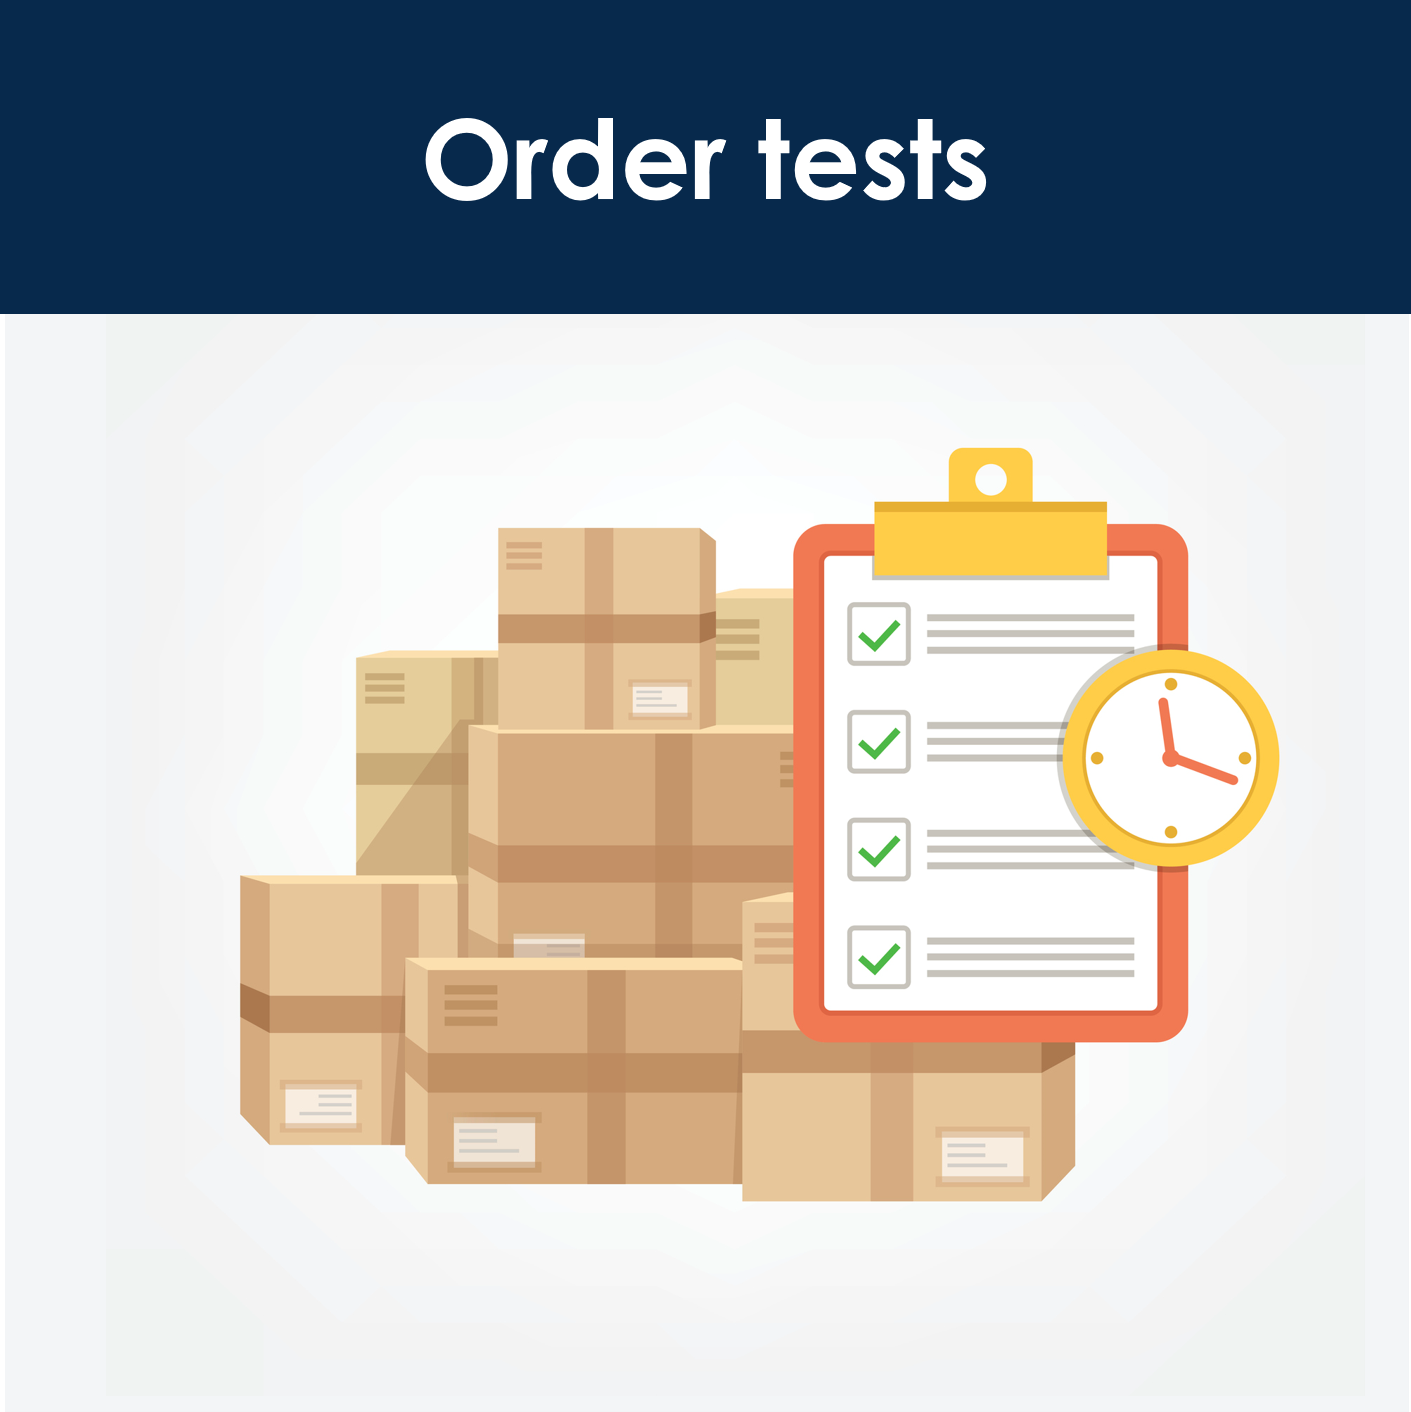 Order tests